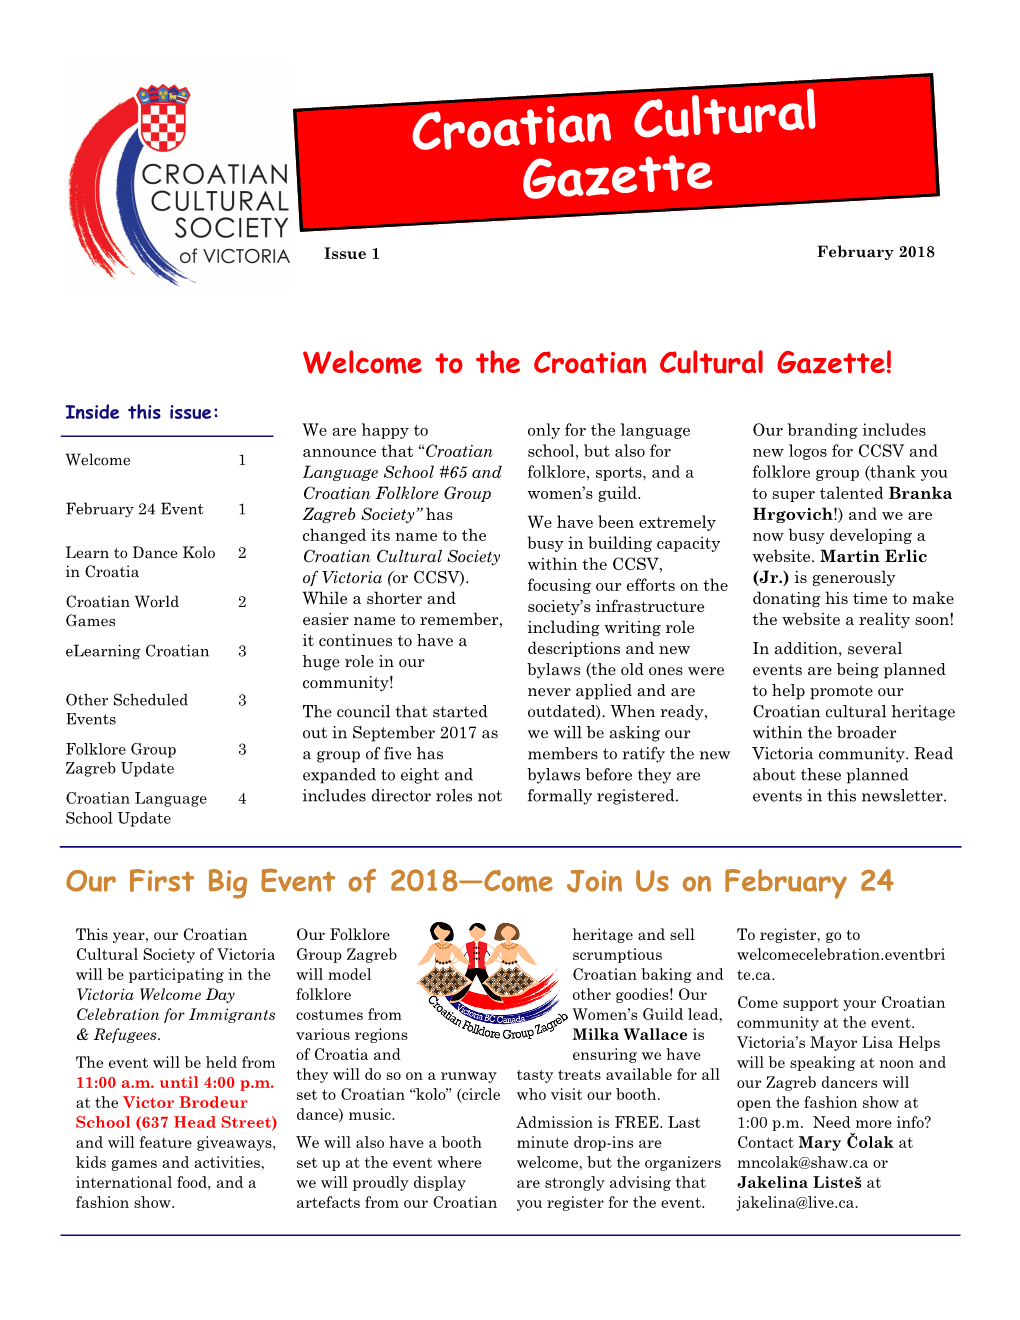 Croatian Cultural Gazette 1